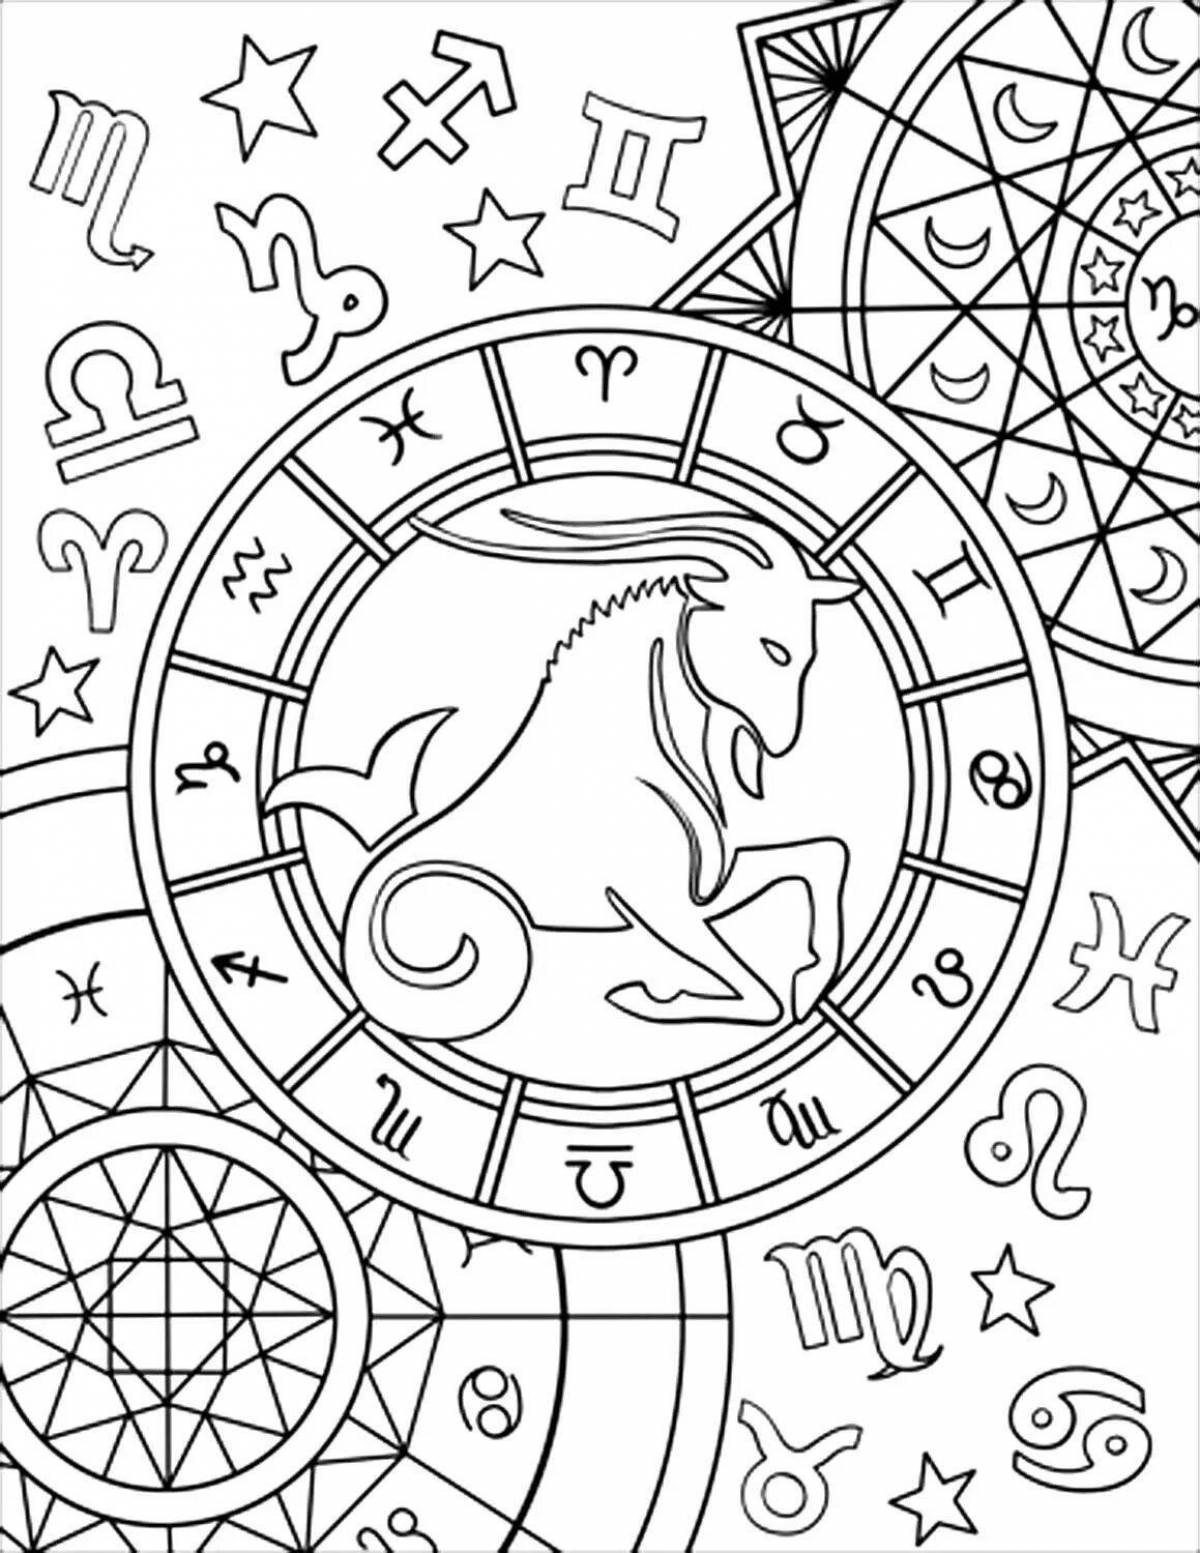 Coloring book amazing zodiac sign Capricorn